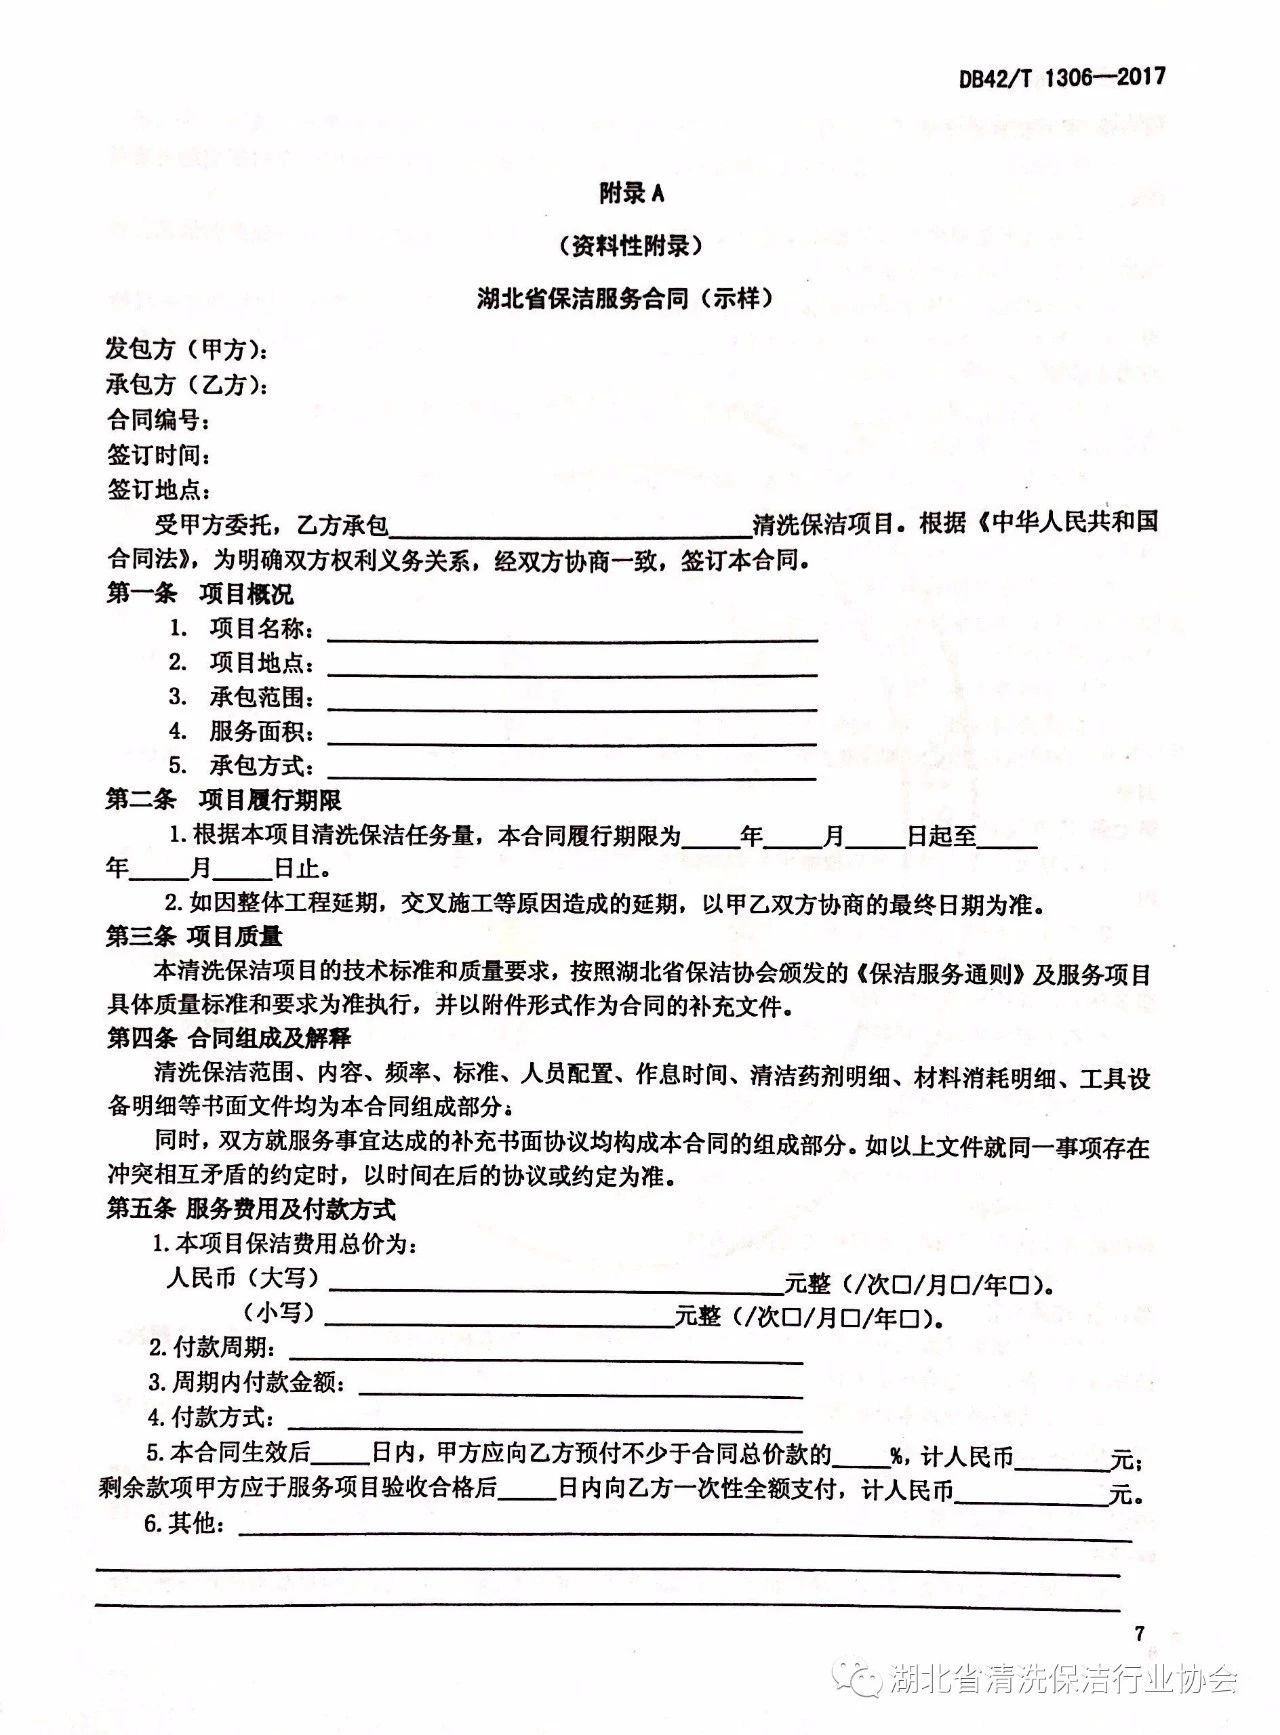 湖北省清洗保洁行业协会第一部地方标准《保洁服务通则》颁布实施11.jpg